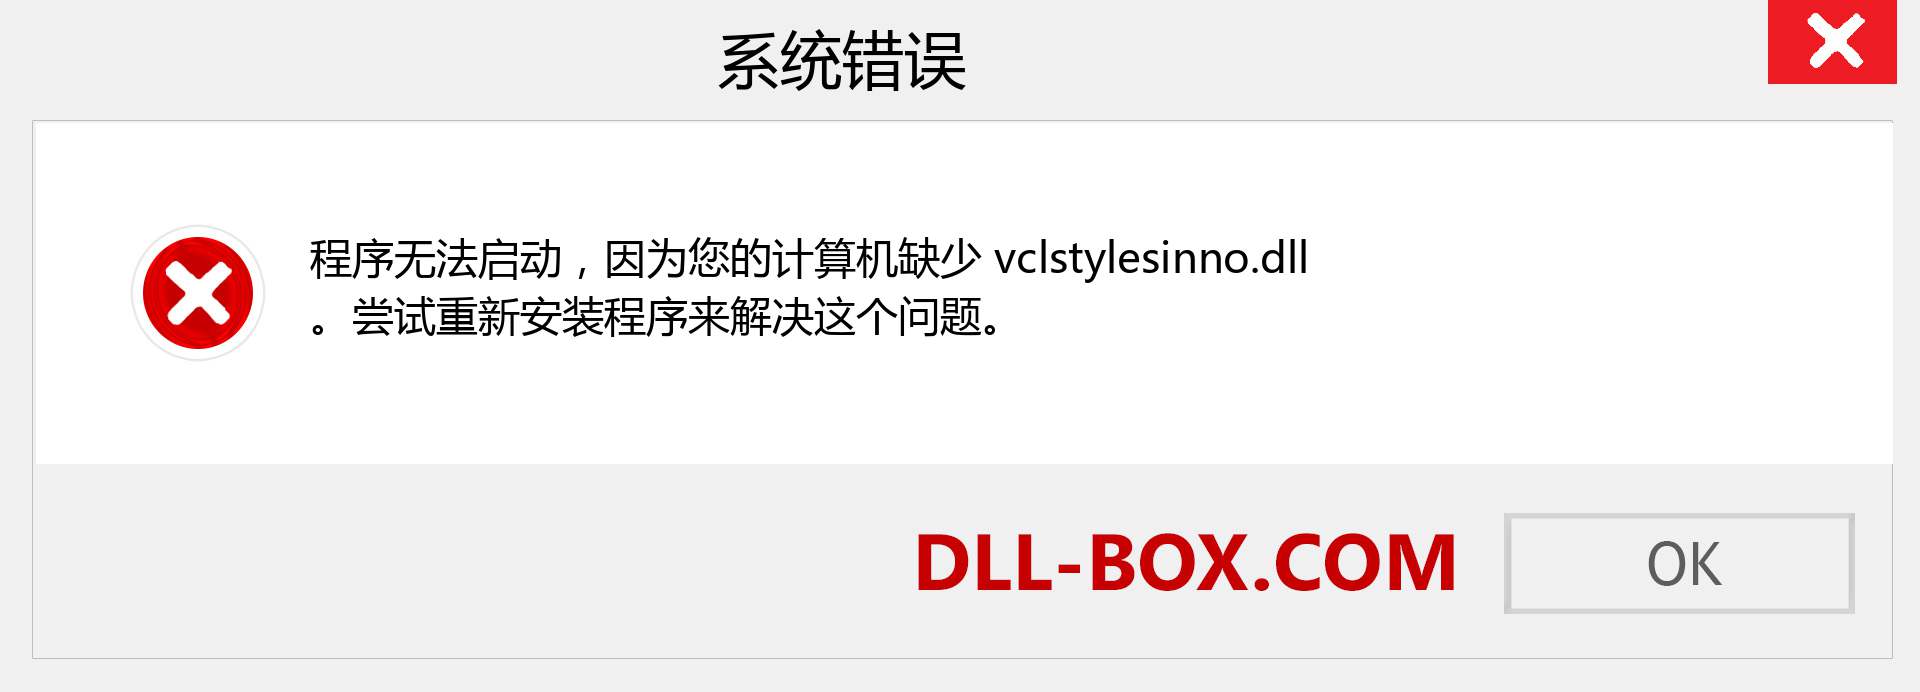 vclstylesinno.dll 文件丢失？。 适用于 Windows 7、8、10 的下载 - 修复 Windows、照片、图像上的 vclstylesinno dll 丢失错误